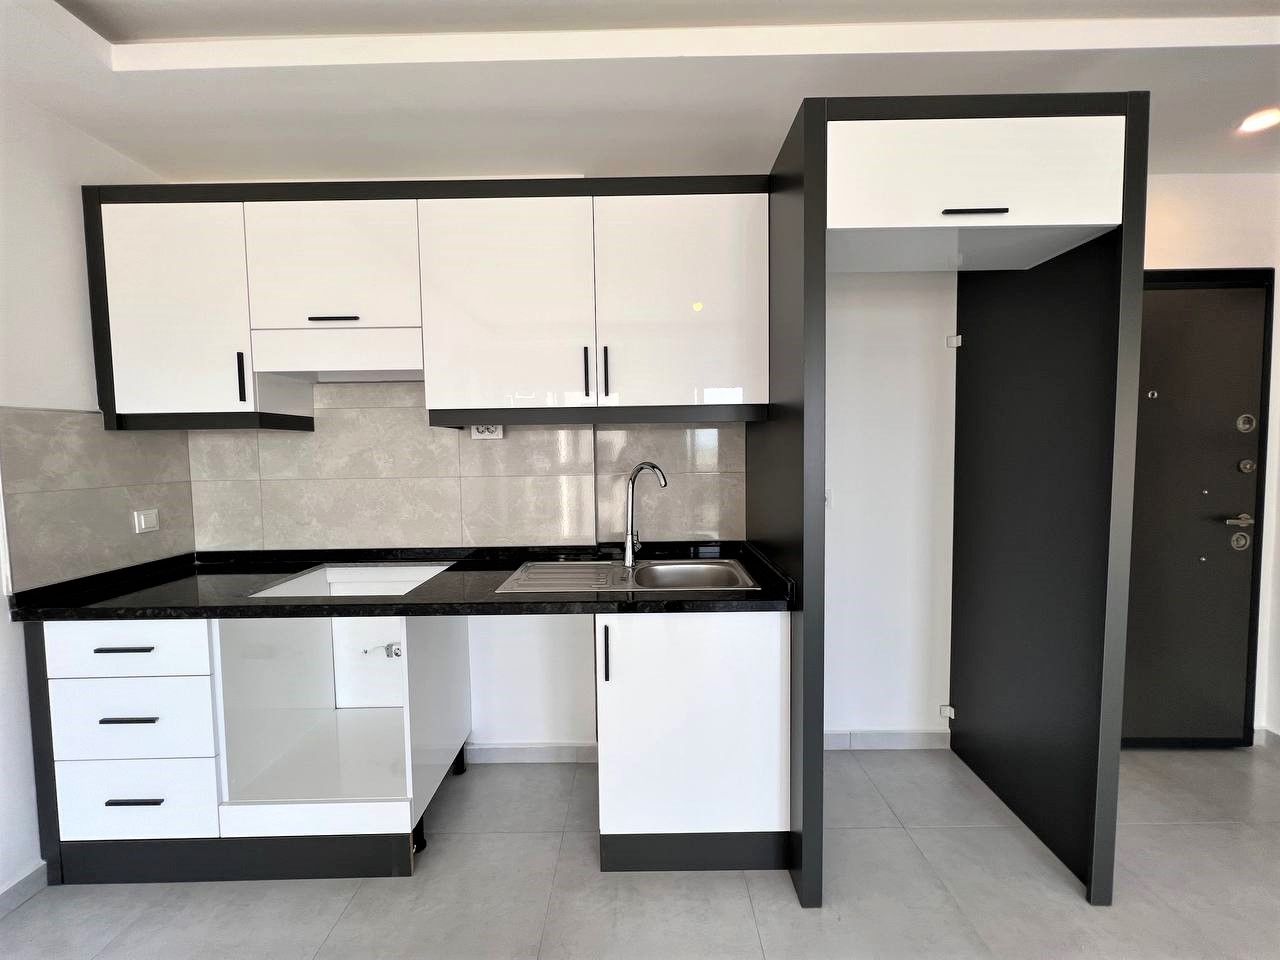 1-bedroom apartment in new building - Alanya, Avsallar